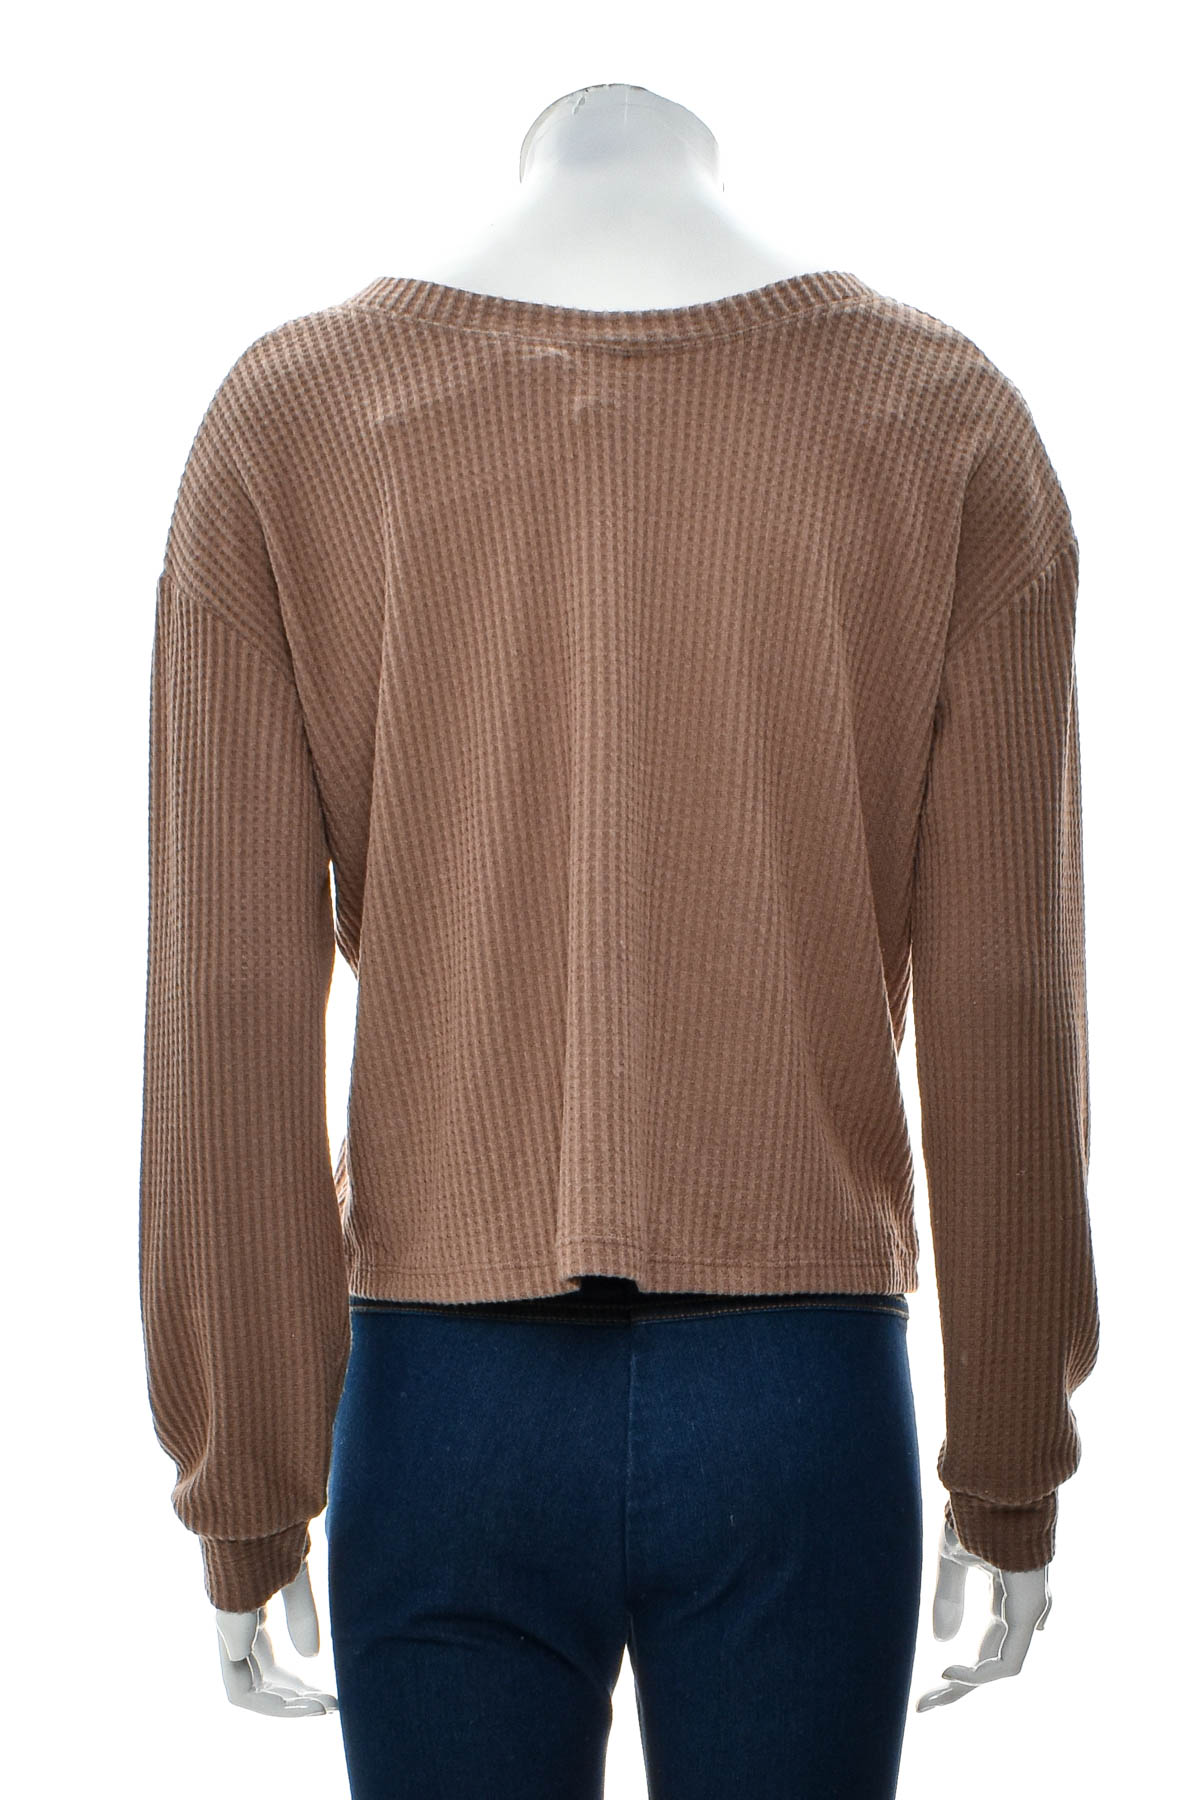 Women's sweater - AEROPOSTALE - 1